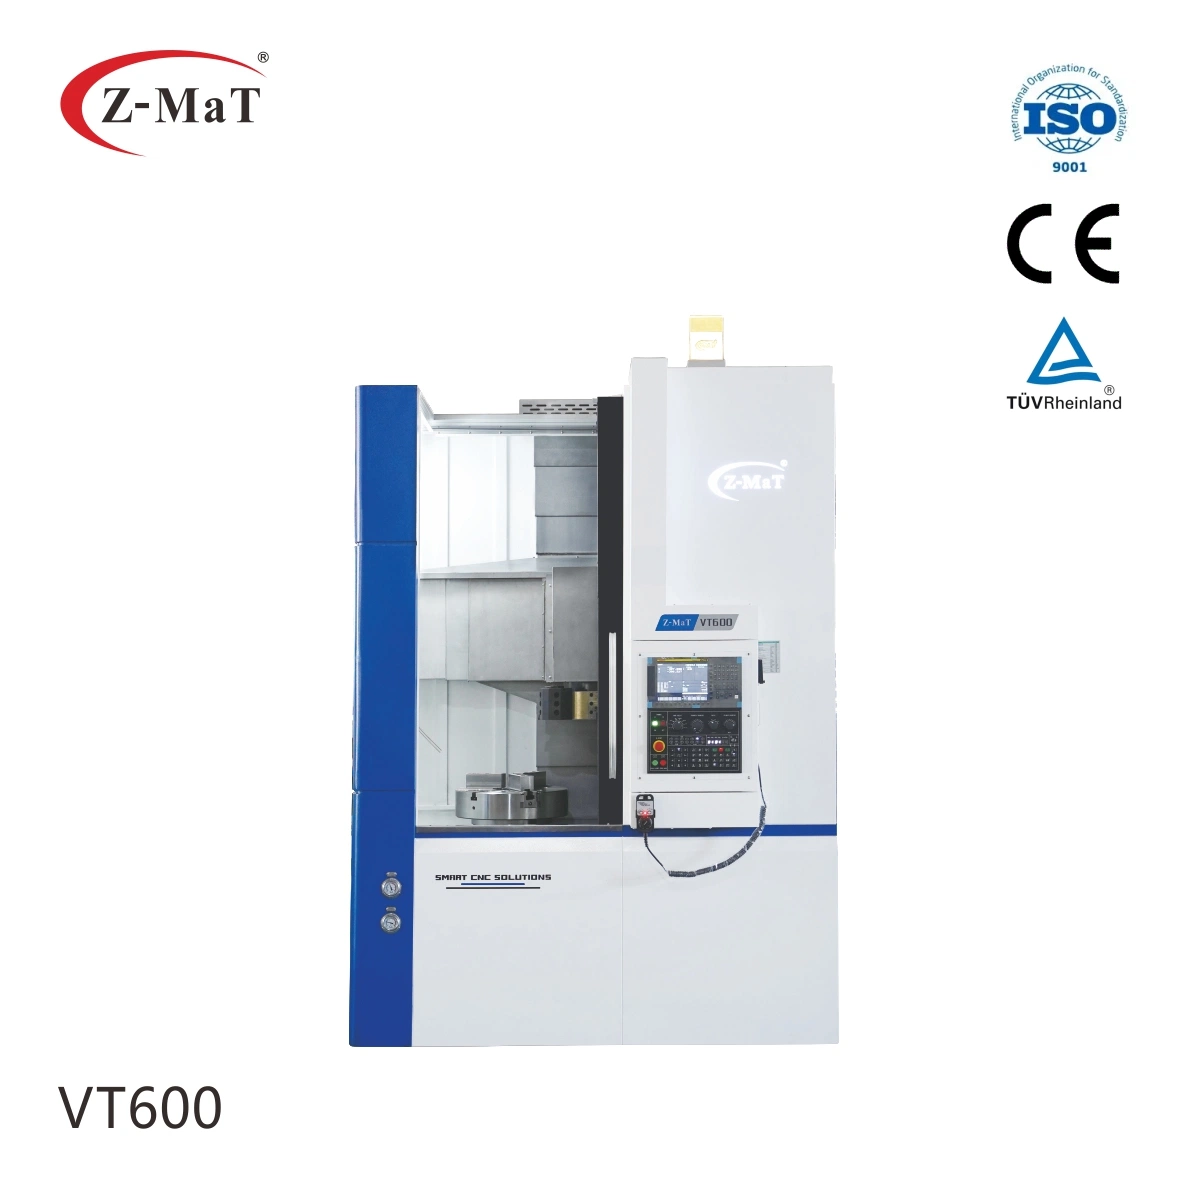 Herramienta de máquina CNC vertical torno máquina torneadora Z-mat VT600